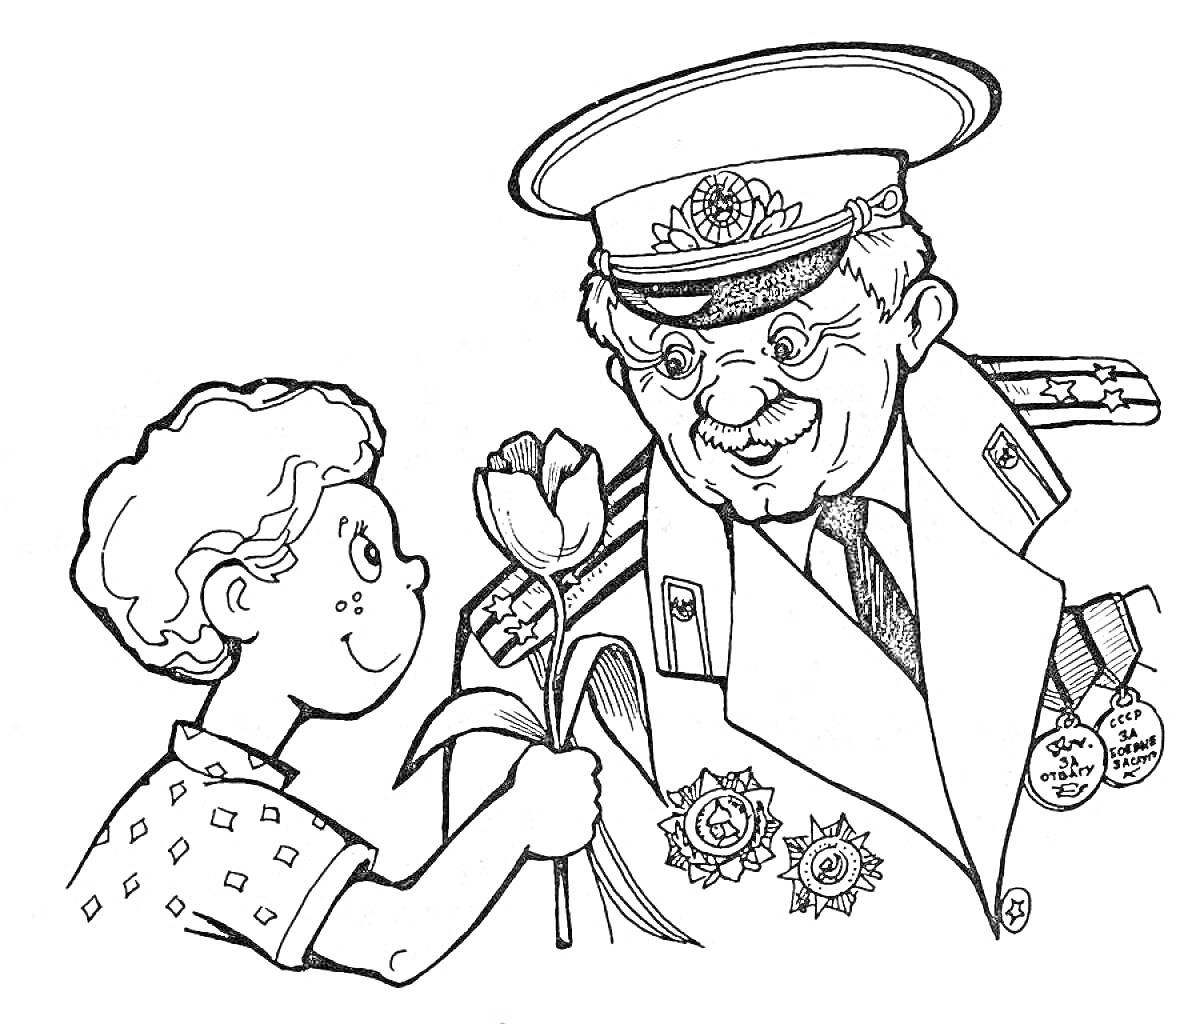 Ребёнок дарит цветок мужчине в военной форме с медалями